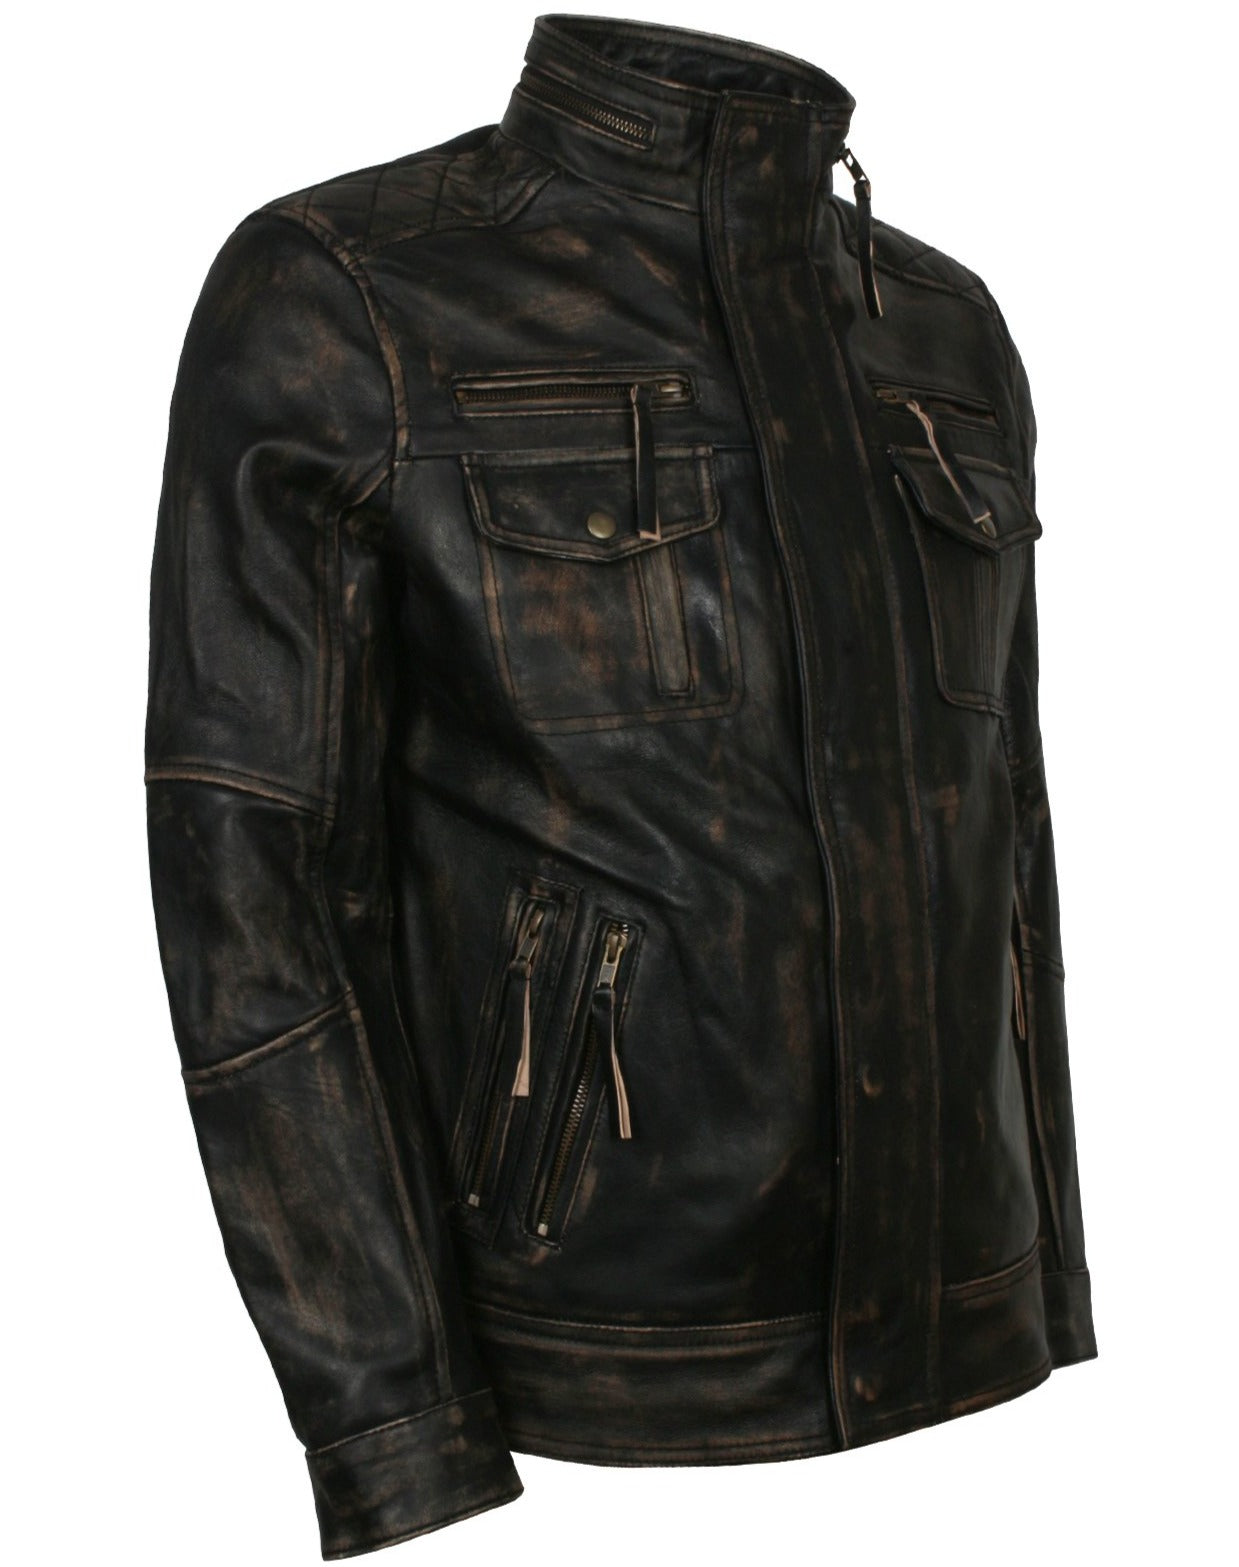 Distressed Leather Jacket Mens Biker